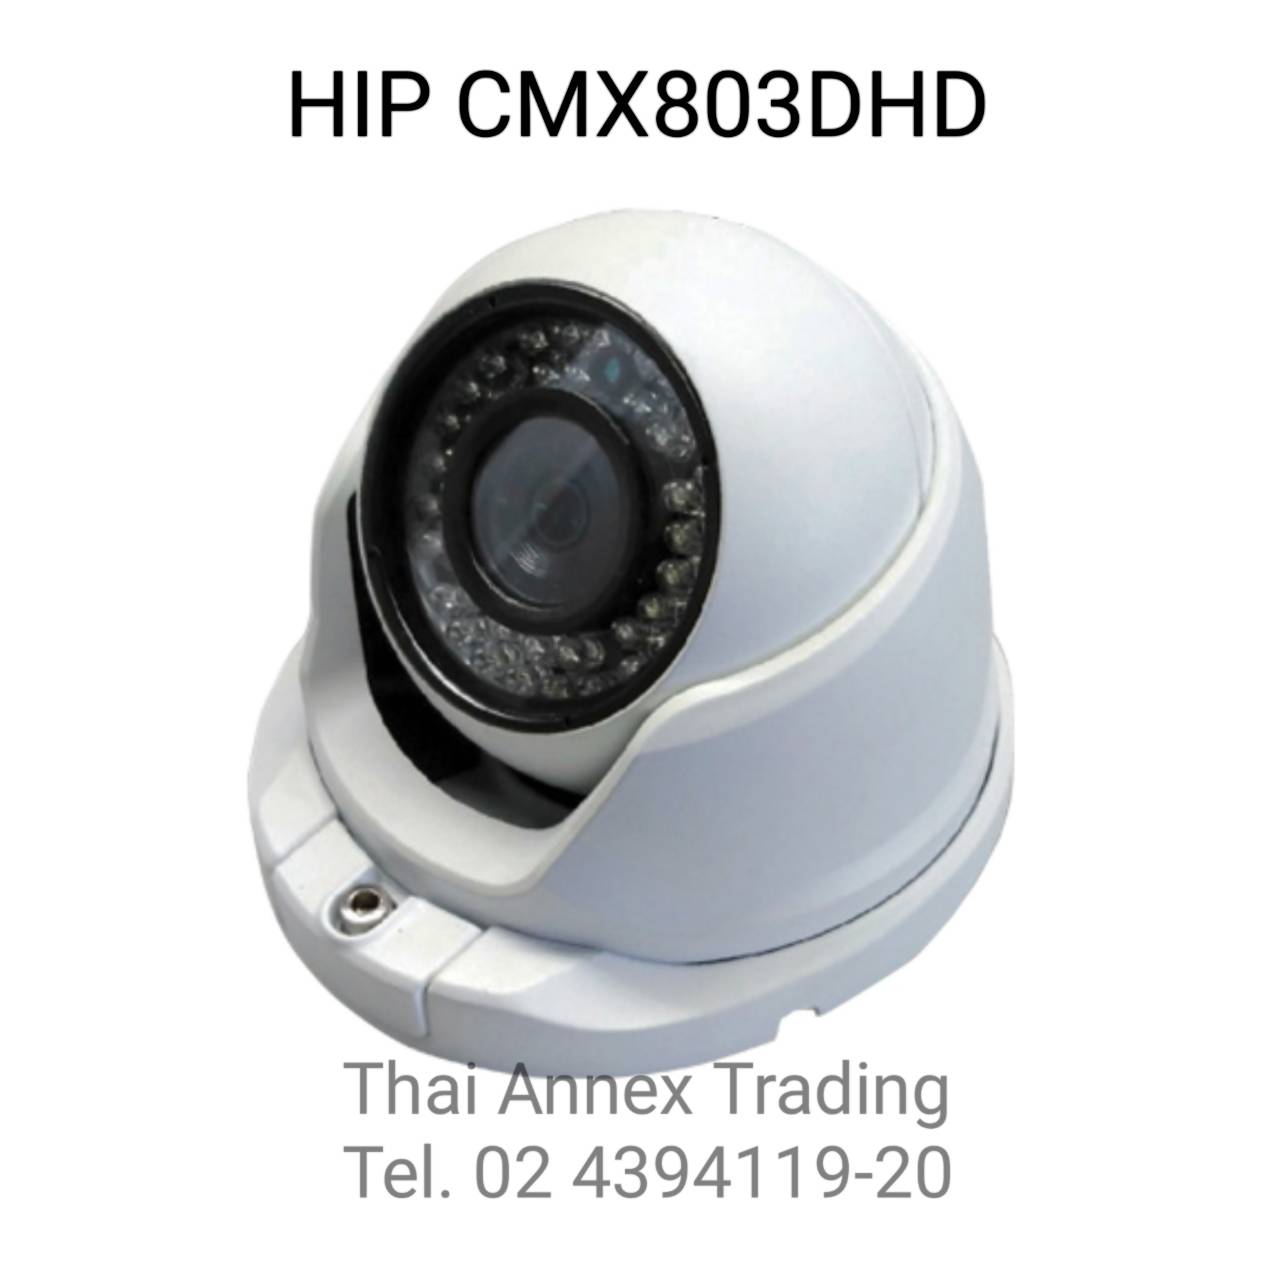 กล้องวงจรปิด HIP CMX-803DHD